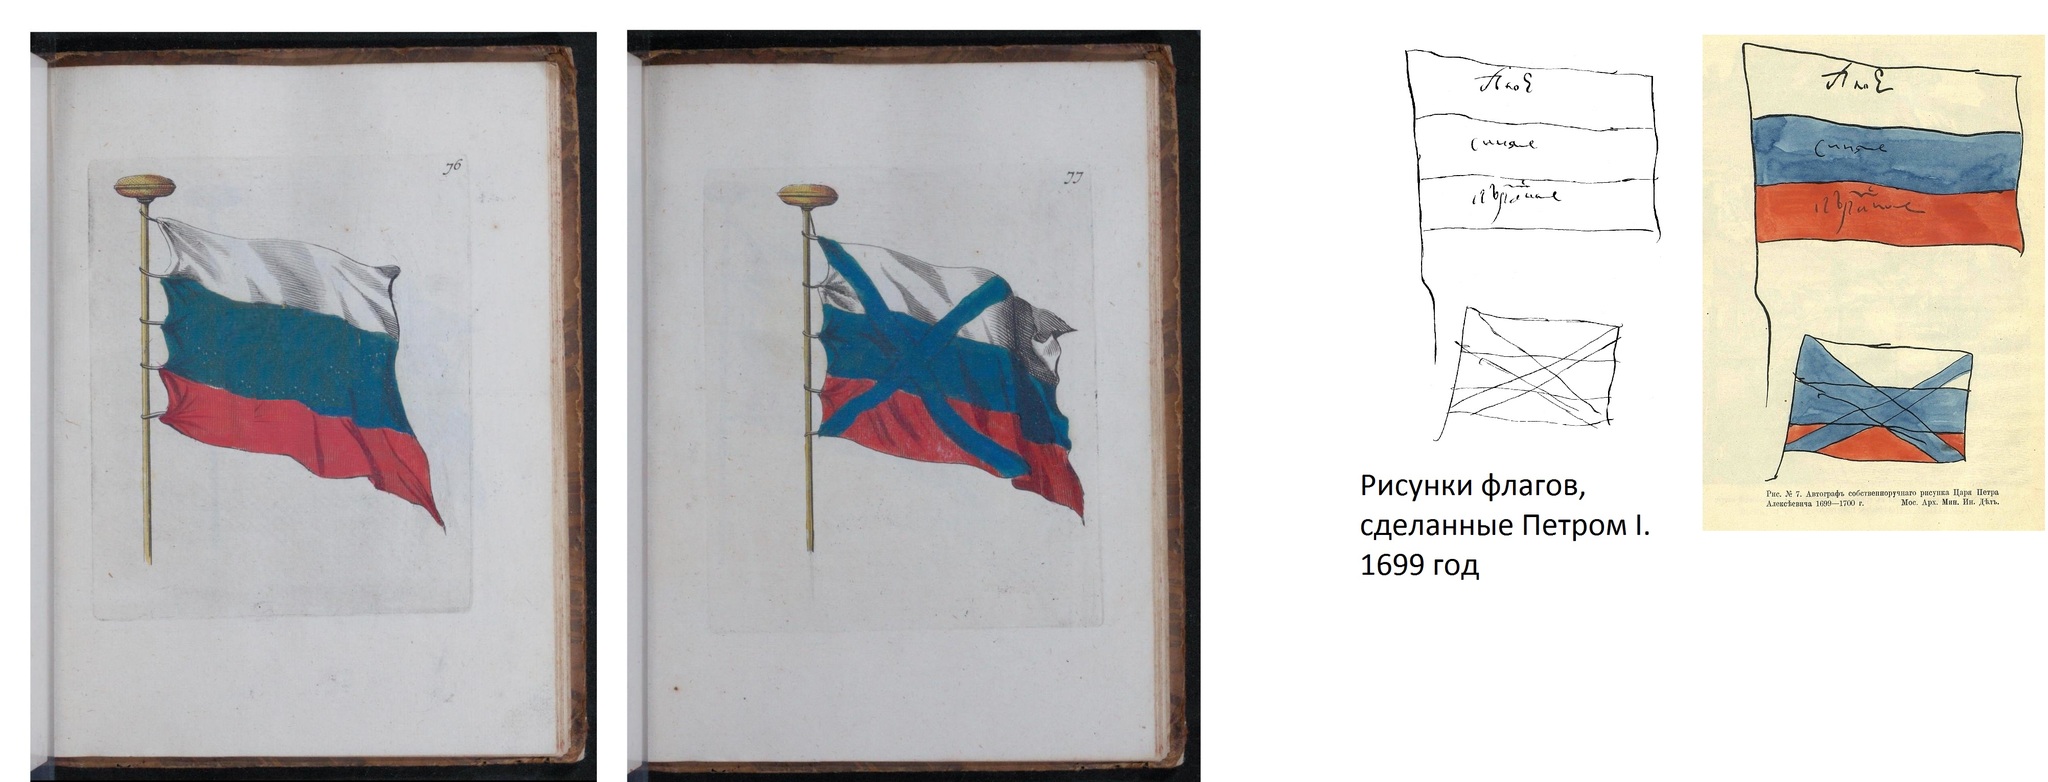 Флаги года в России Петра 1